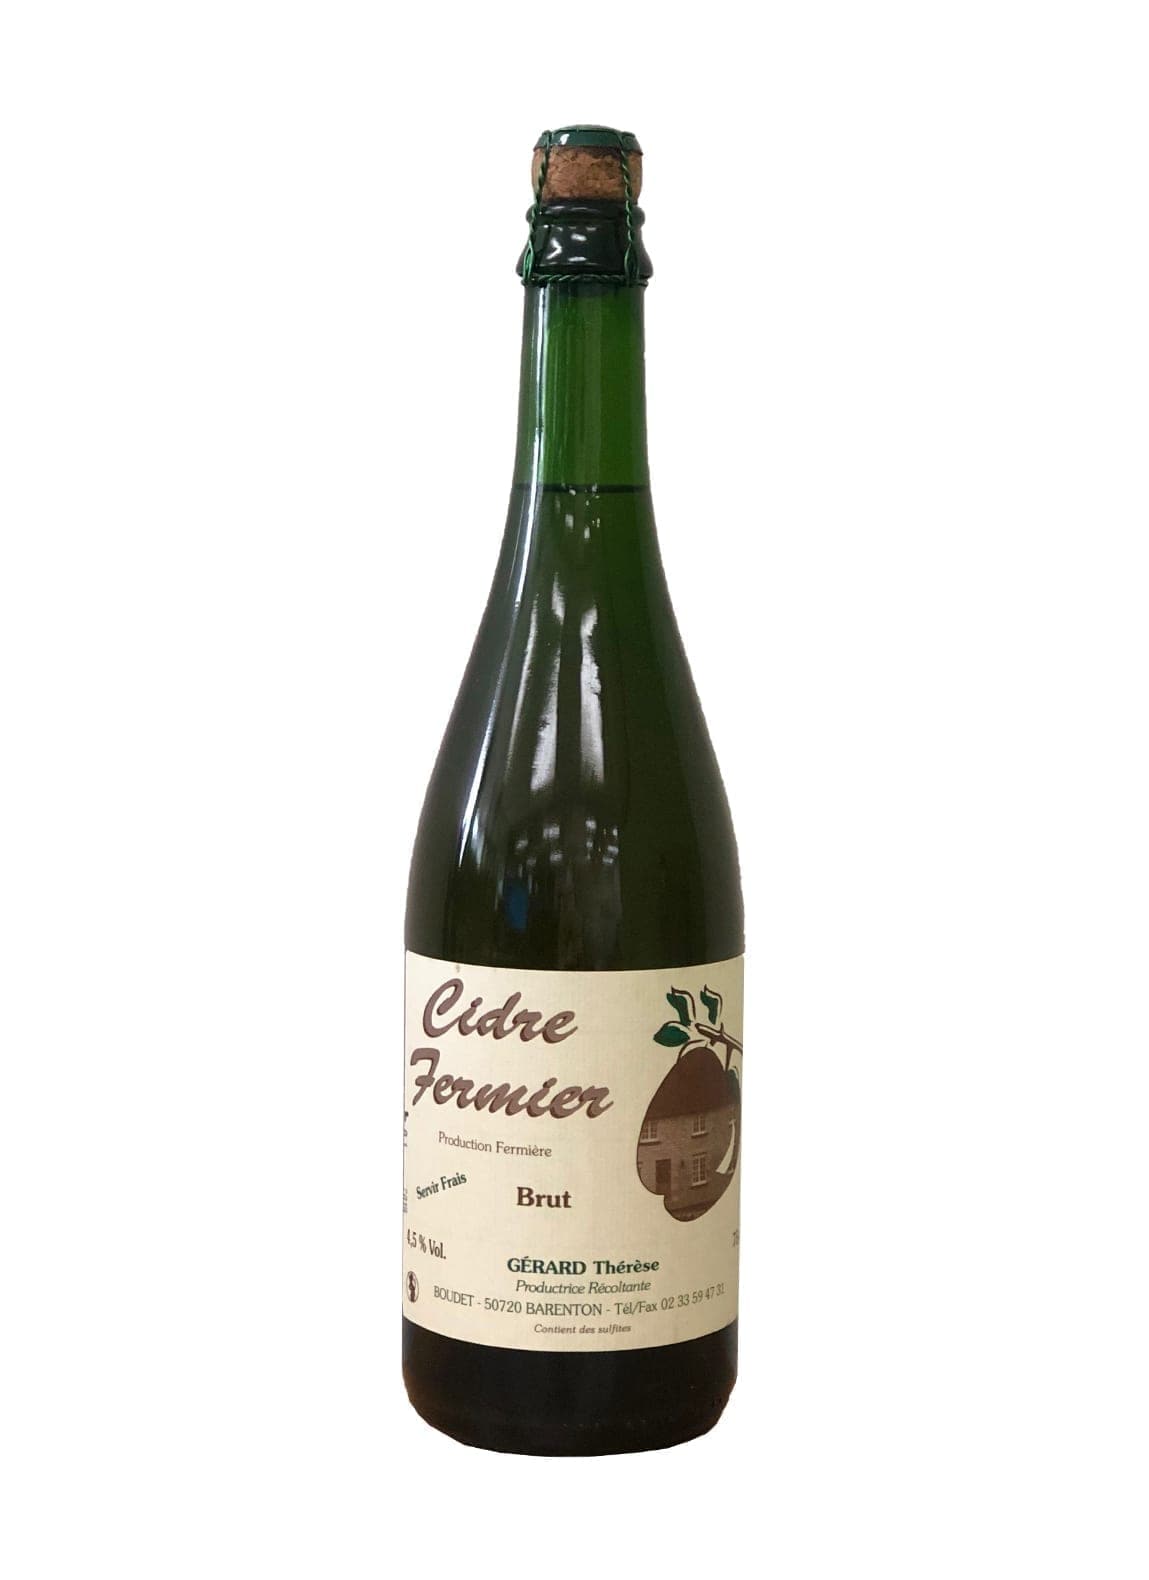 Gerard Therese Boudet Cider AOC Domfrontais Cidre Brut Fermier (Apple Cider) 4.5% 750ml | Hard Cider | Shop online at Spirits of France